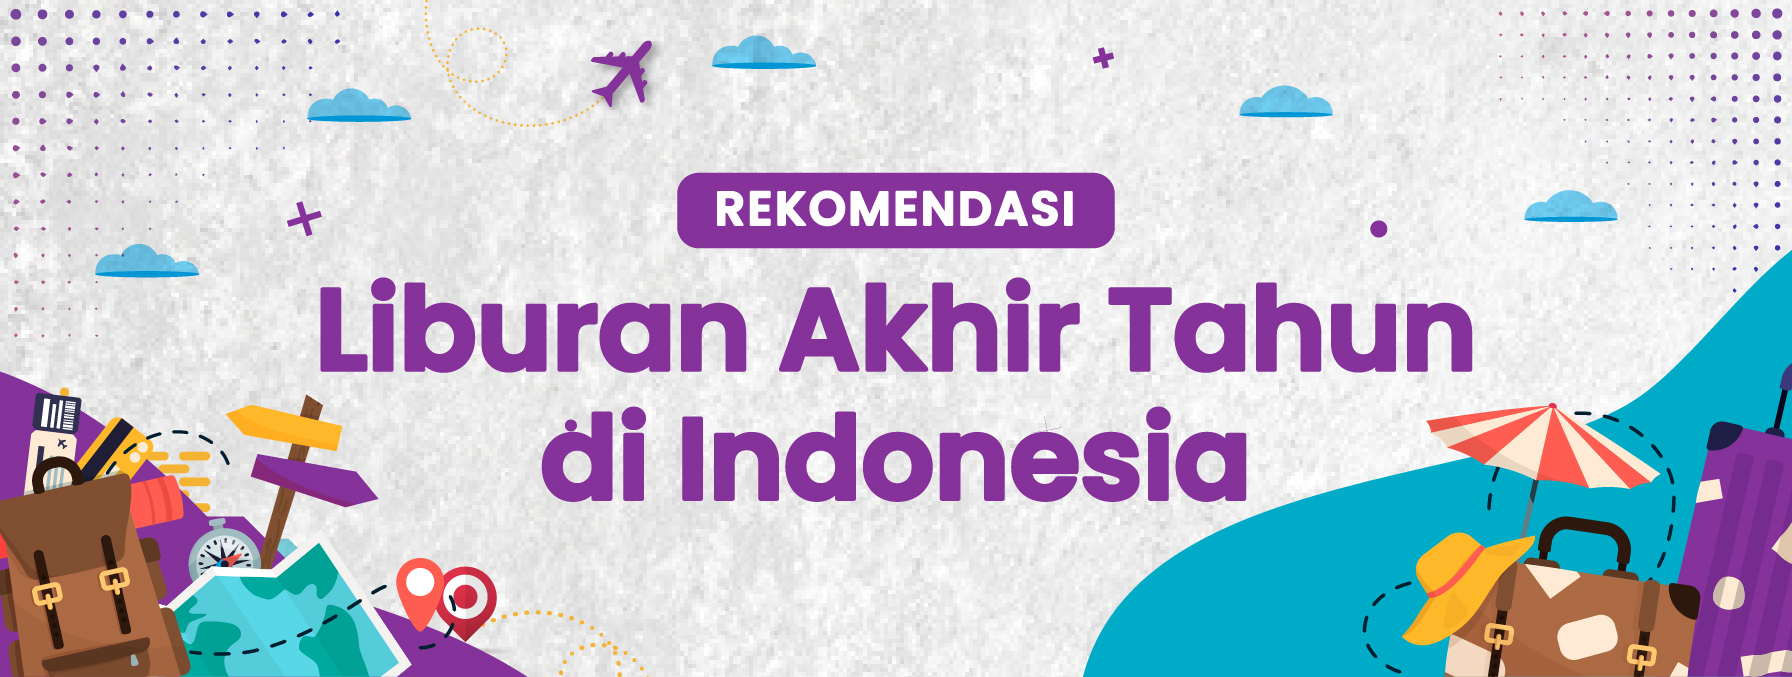 Rekomendasi Liburan Akhir Tahun di Indonesia